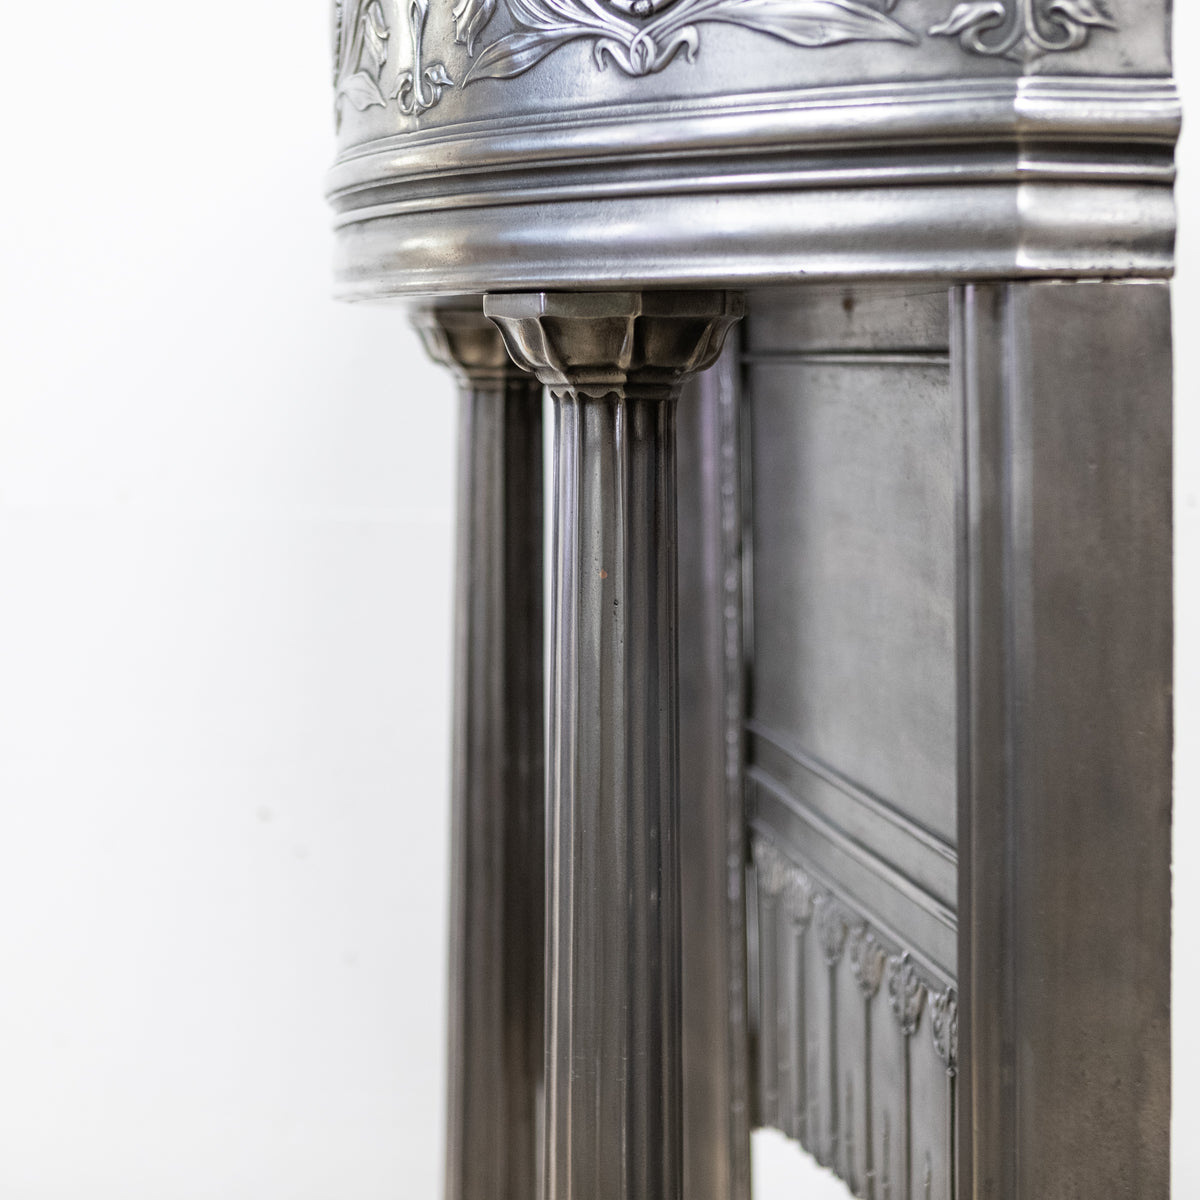 Rare Antique Art Nouveau Chimneypiece with Columns | The Architectural Forum